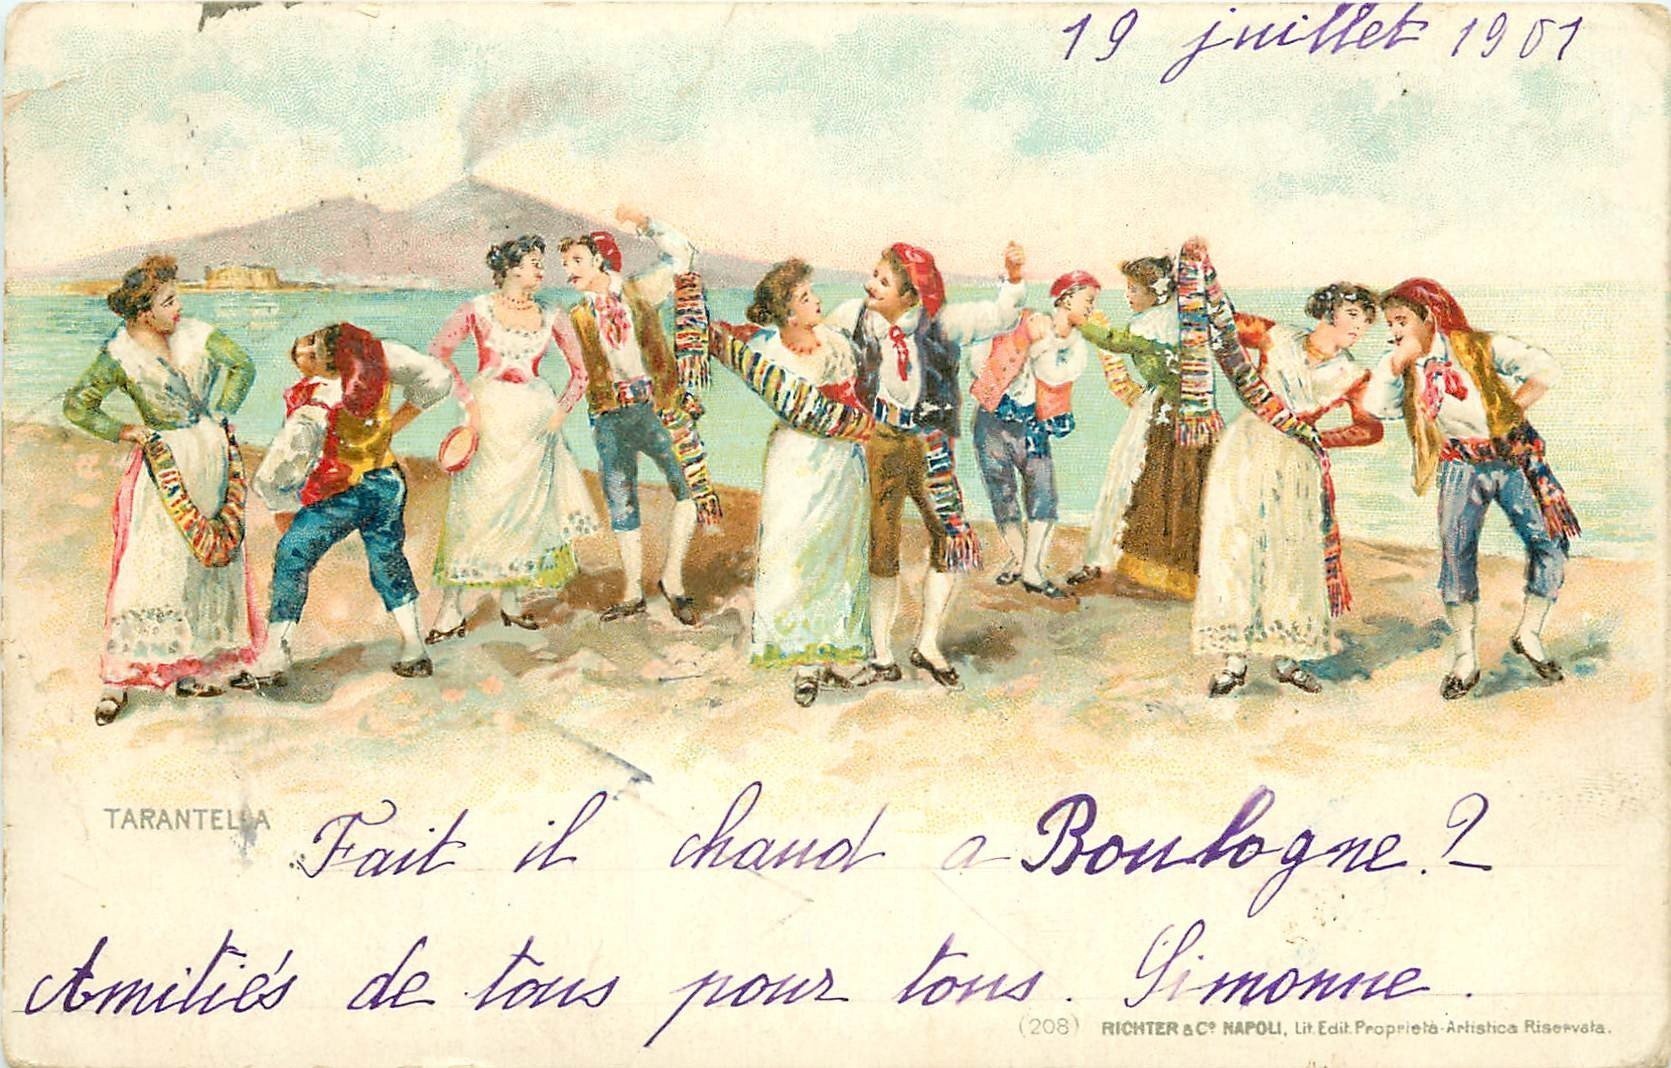 NAPOLI. La Tarantella danse près du Vesuvio 1901